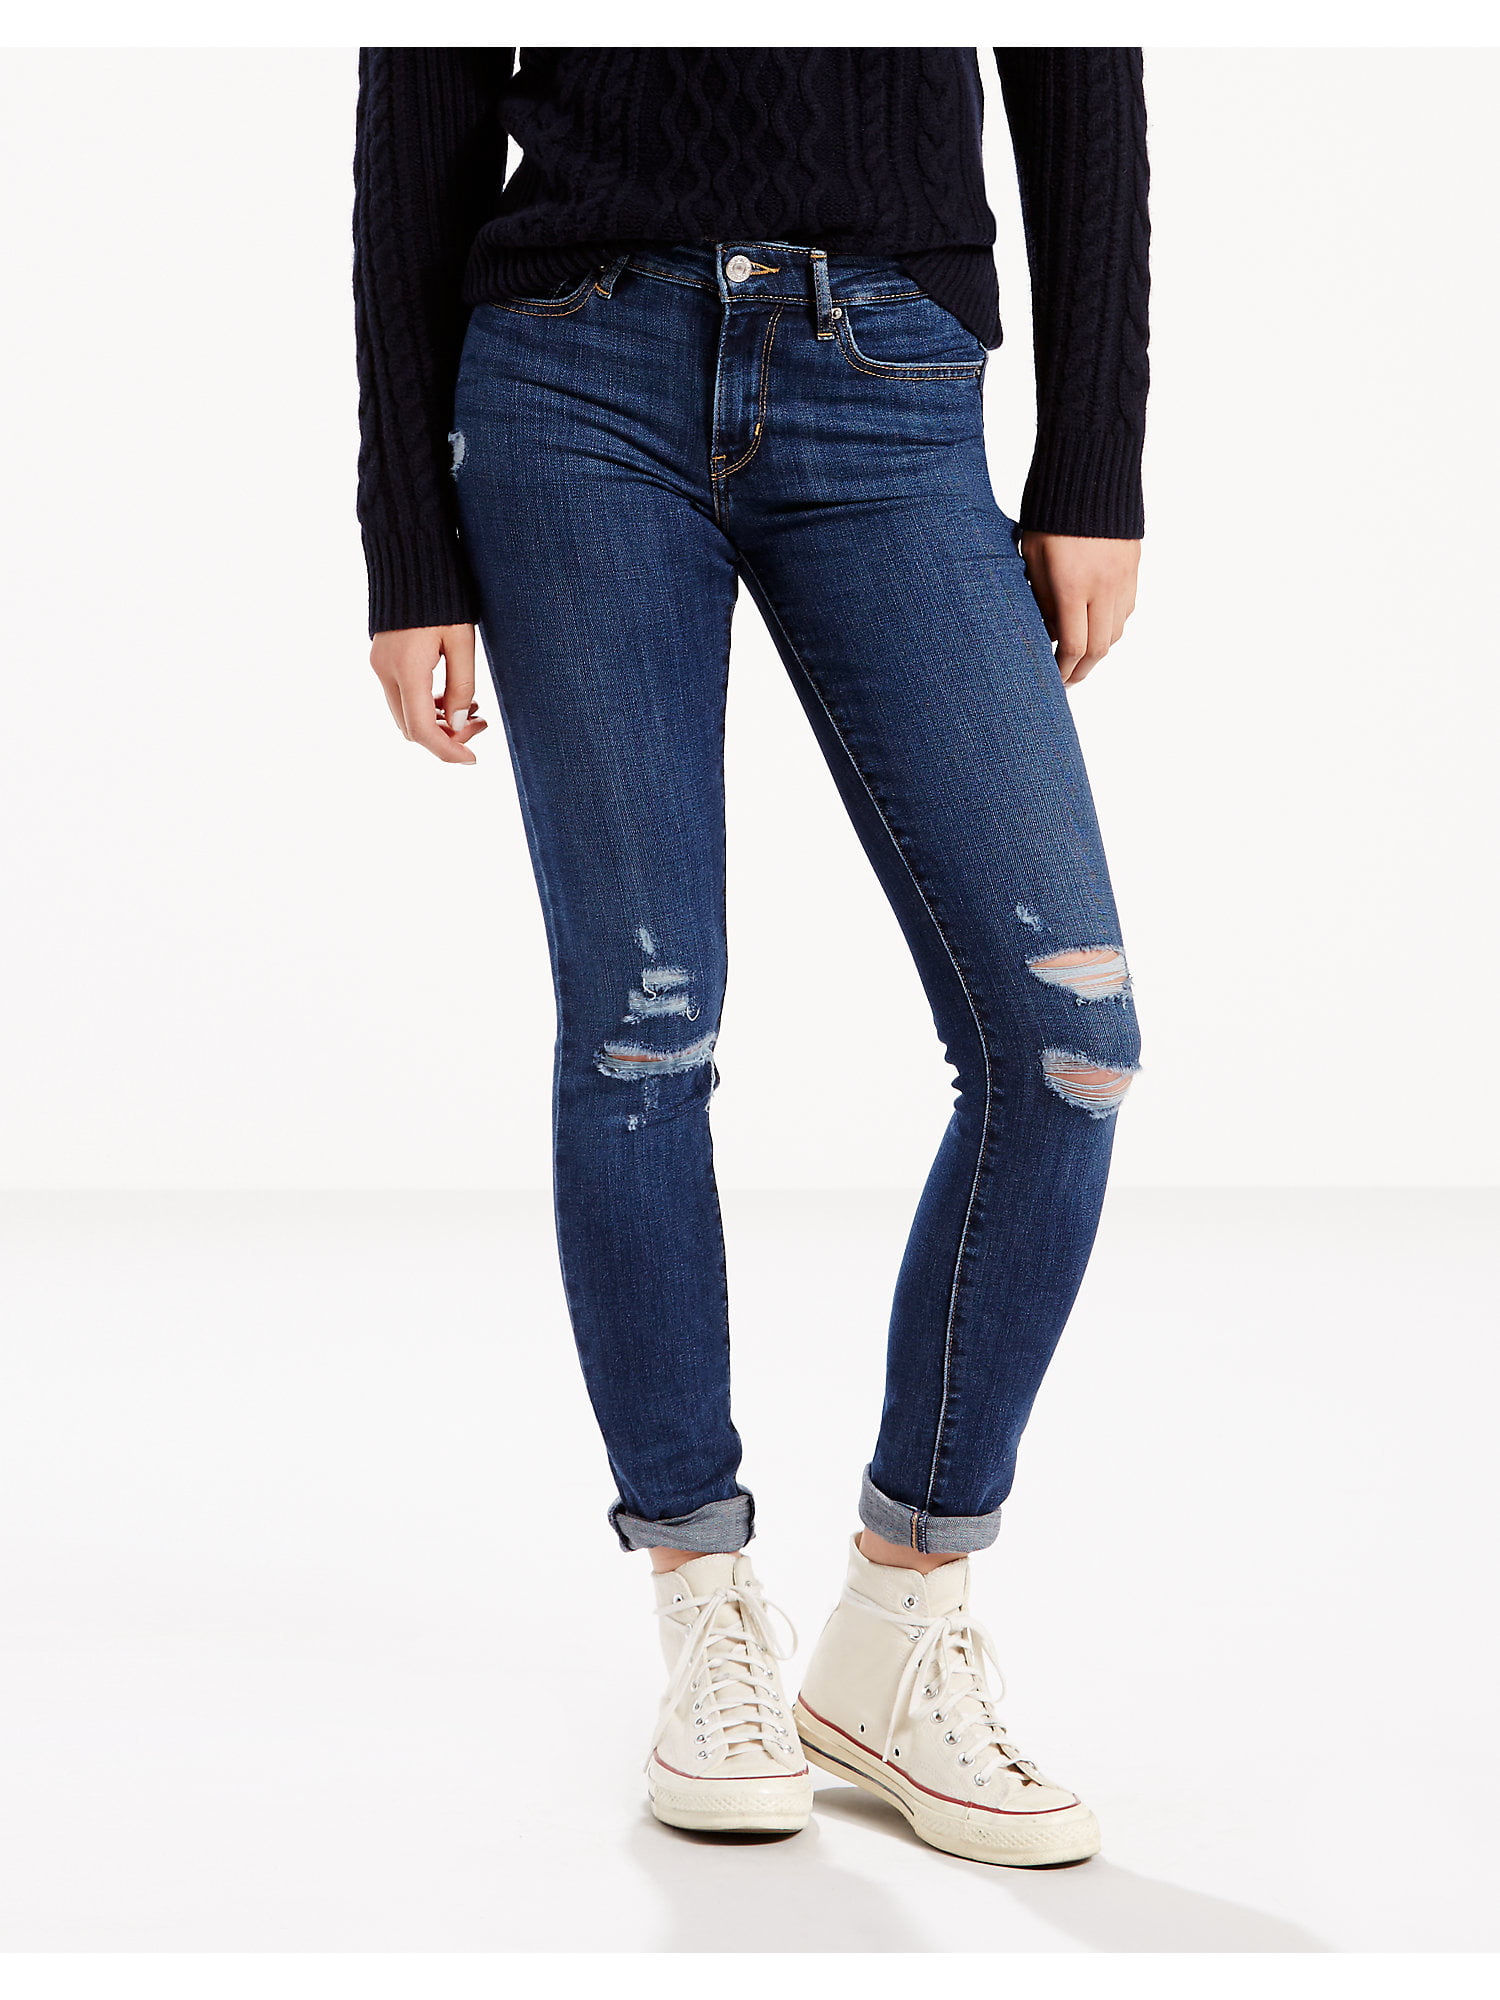 Levis Women's 711 Skinny Jeans - Damage is Done | Walmart Canada